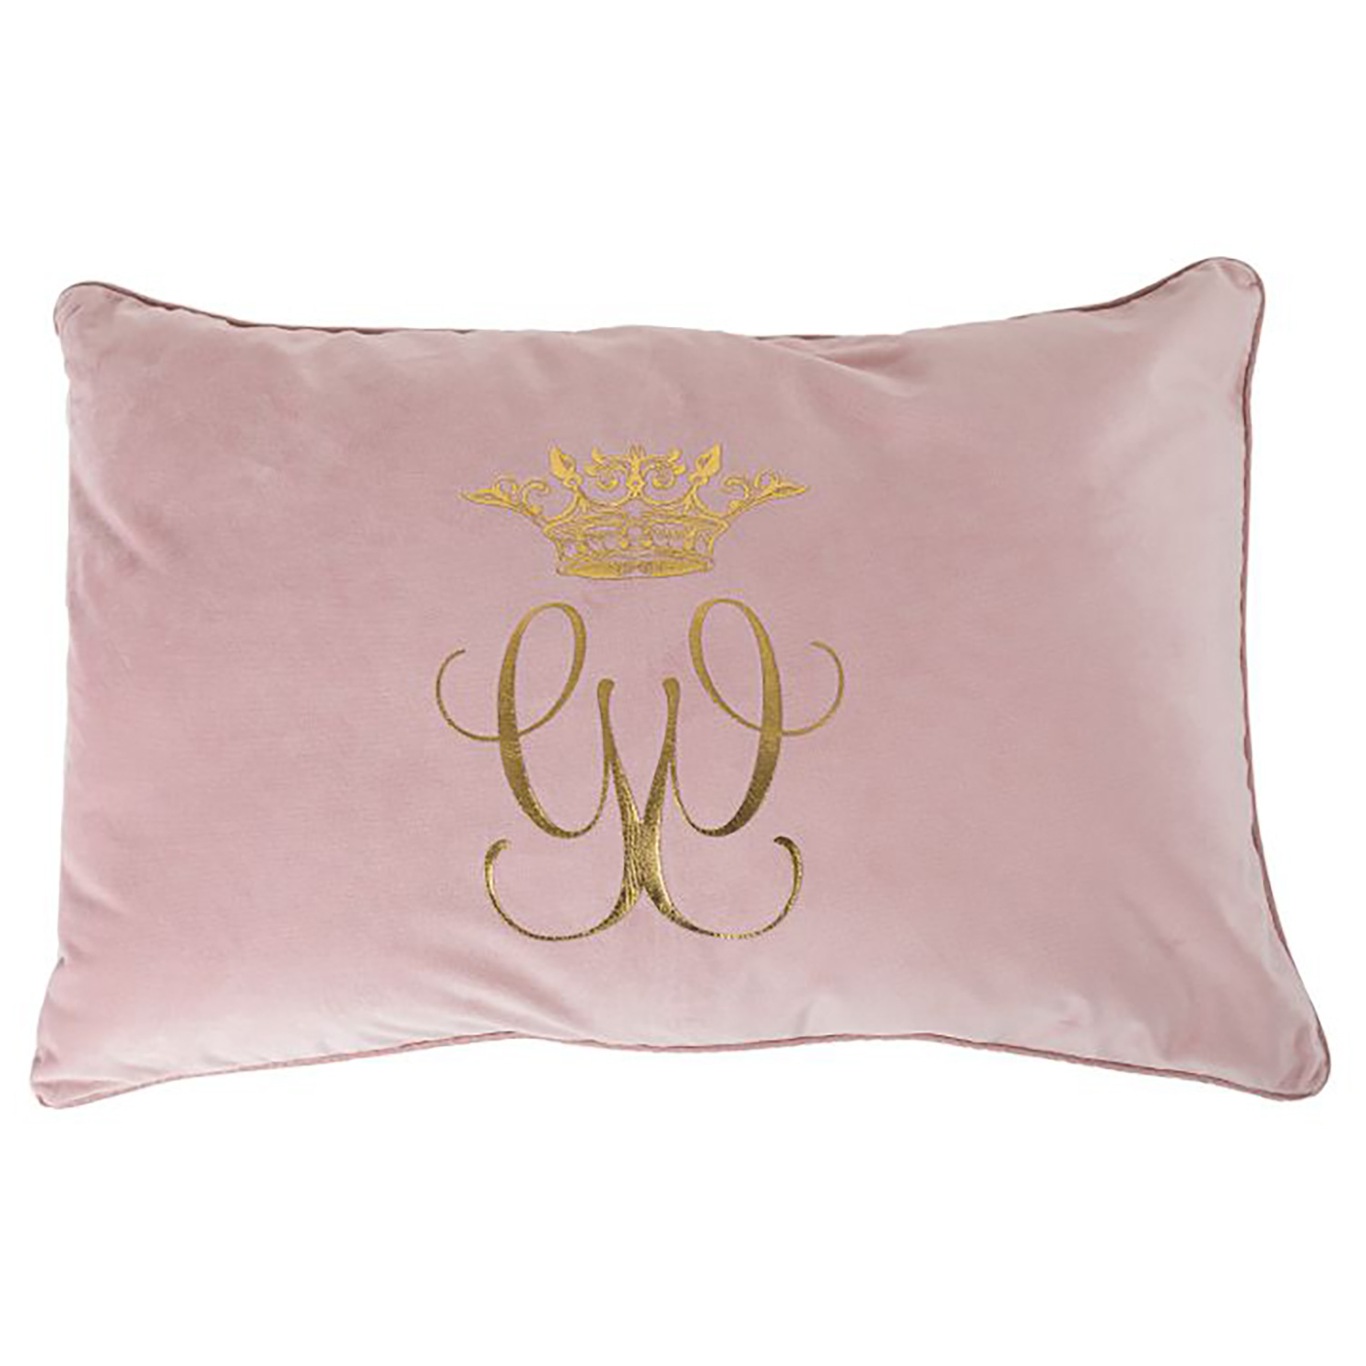 Royal Pudebetræk Pink, 40x60 cm